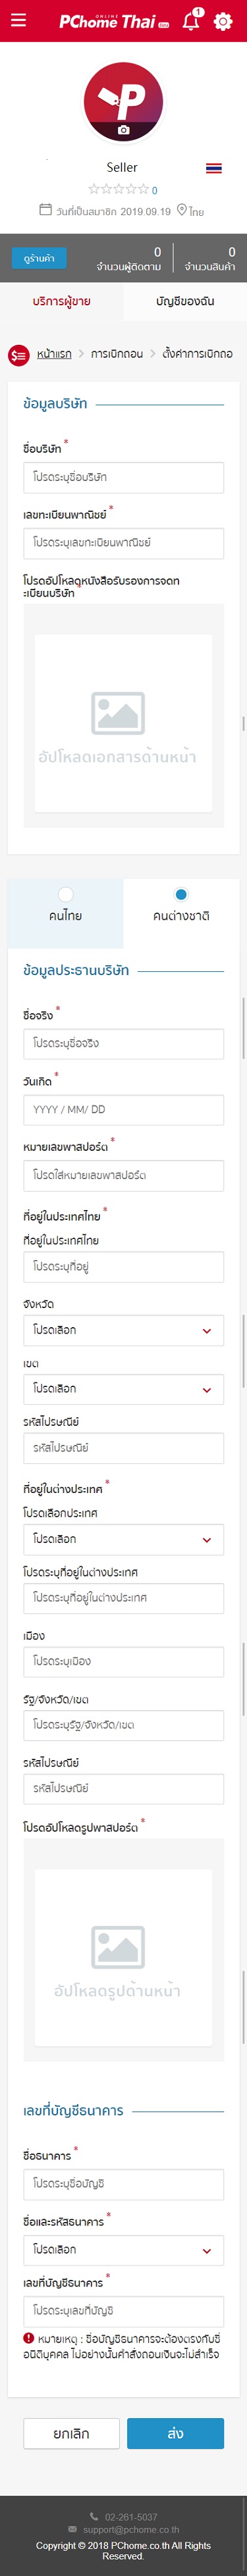 STEP 06-2. 若公司負責人不具泰國國民身分，請依序填寫資訊並且上傳公司負責人護照圖檔。